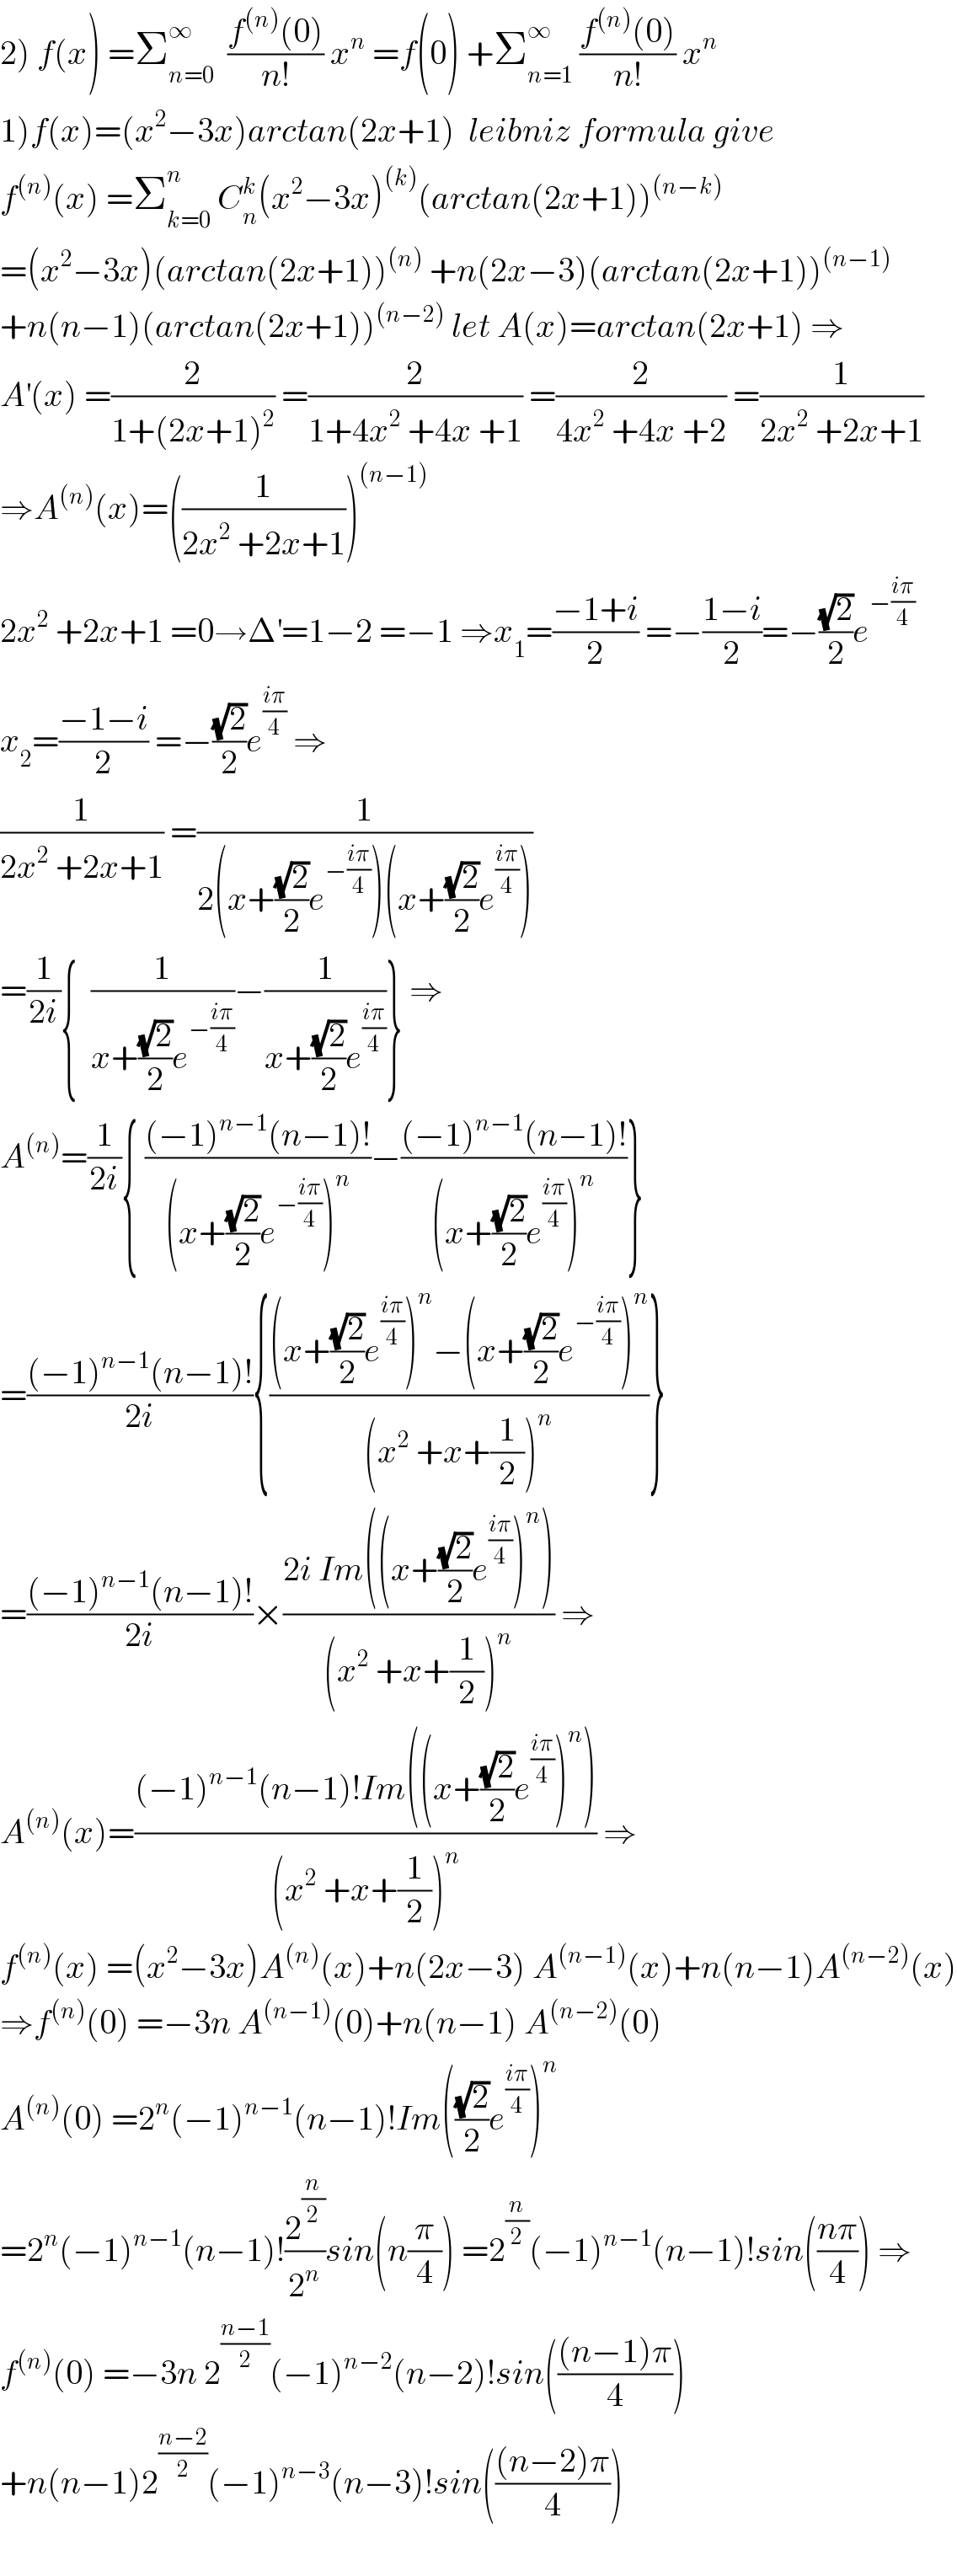 2) f(x) =Σ_(n=0) ^∞   ((f^((n)) (0))/(n!)) x^n  =f(0) +Σ_(n=1) ^∞  ((f^((n)) (0))/(n!)) x^n   1)f(x)=(x^2 −3x)arctan(2x+1)  leibniz formula give  f^((n)) (x) =Σ_(k=0) ^n  C_n ^k (x^2 −3x)^((k)) (arctan(2x+1))^((n−k))   =(x^2 −3x)(arctan(2x+1))^((n))  +n(2x−3)(arctan(2x+1))^((n−1))   +n(n−1)(arctan(2x+1))^((n−2))  let A(x)=arctan(2x+1) ⇒  A^′ (x) =(2/(1+(2x+1)^2 )) =(2/(1+4x^2  +4x +1)) =(2/(4x^2  +4x +2)) =(1/(2x^2  +2x+1))  ⇒A^((n)) (x)=((1/(2x^2  +2x+1)))^((n−1))   2x^2  +2x+1 =0→Δ^′ =1−2 =−1 ⇒x_1 =((−1+i)/2) =−((1−i)/2)=−((√2)/2)e^(−((iπ)/4))   x_2 =((−1−i)/2) =−((√2)/2)e^((iπ)/4)  ⇒  (1/(2x^2  +2x+1)) =(1/(2(x+((√2)/2)e^(−((iπ)/4)) )(x+((√2)/2)e^((iπ)/4) )))  =(1/(2i)){  (1/(x+((√2)/2)e^(−((iπ)/4)) ))−(1/(x+((√2)/2)e^((iπ)/4) ))} ⇒  A^((n)) =(1/(2i)){ (((−1)^(n−1) (n−1)!)/((x+((√2)/2)e^(−((iπ)/4)) )^n ))−(((−1)^(n−1) (n−1)!)/((x+((√2)/2)e^((iπ)/4) )^n ))}  =(((−1)^(n−1) (n−1)!)/(2i)){(((x+((√2)/2)e^((iπ)/4) )^n −(x+((√2)/2)e^(−((iπ)/4)) )^n )/((x^2  +x+(1/2))^n ))}  =(((−1)^(n−1) (n−1)!)/(2i))×((2i Im((x+((√2)/2)e^((iπ)/4) )^n ))/((x^2  +x+(1/2))^n )) ⇒  A^((n)) (x)=(((−1)^(n−1) (n−1)!Im((x+((√2)/2)e^((iπ)/4) )^n ))/((x^2  +x+(1/2))^n )) ⇒  f^((n)) (x) =(x^2 −3x)A^((n)) (x)+n(2x−3) A^((n−1)) (x)+n(n−1)A^((n−2)) (x)  ⇒f^((n)) (0) =−3n A^((n−1)) (0)+n(n−1) A^((n−2)) (0)  A^((n)) (0) =2^n (−1)^(n−1) (n−1)!Im(((√2)/2)e^((iπ)/4) )^n   =2^n (−1)^(n−1) (n−1)!(2^(n/2) /2^n )sin(n(π/4)) =2^(n/2) (−1)^(n−1) (n−1)!sin(((nπ)/4)) ⇒  f^((n)) (0) =−3n 2^((n−1)/2) (−1)^(n−2) (n−2)!sin((((n−1)π)/4))  +n(n−1)2^((n−2)/2) (−1)^(n−3) (n−3)!sin((((n−2)π)/4))    